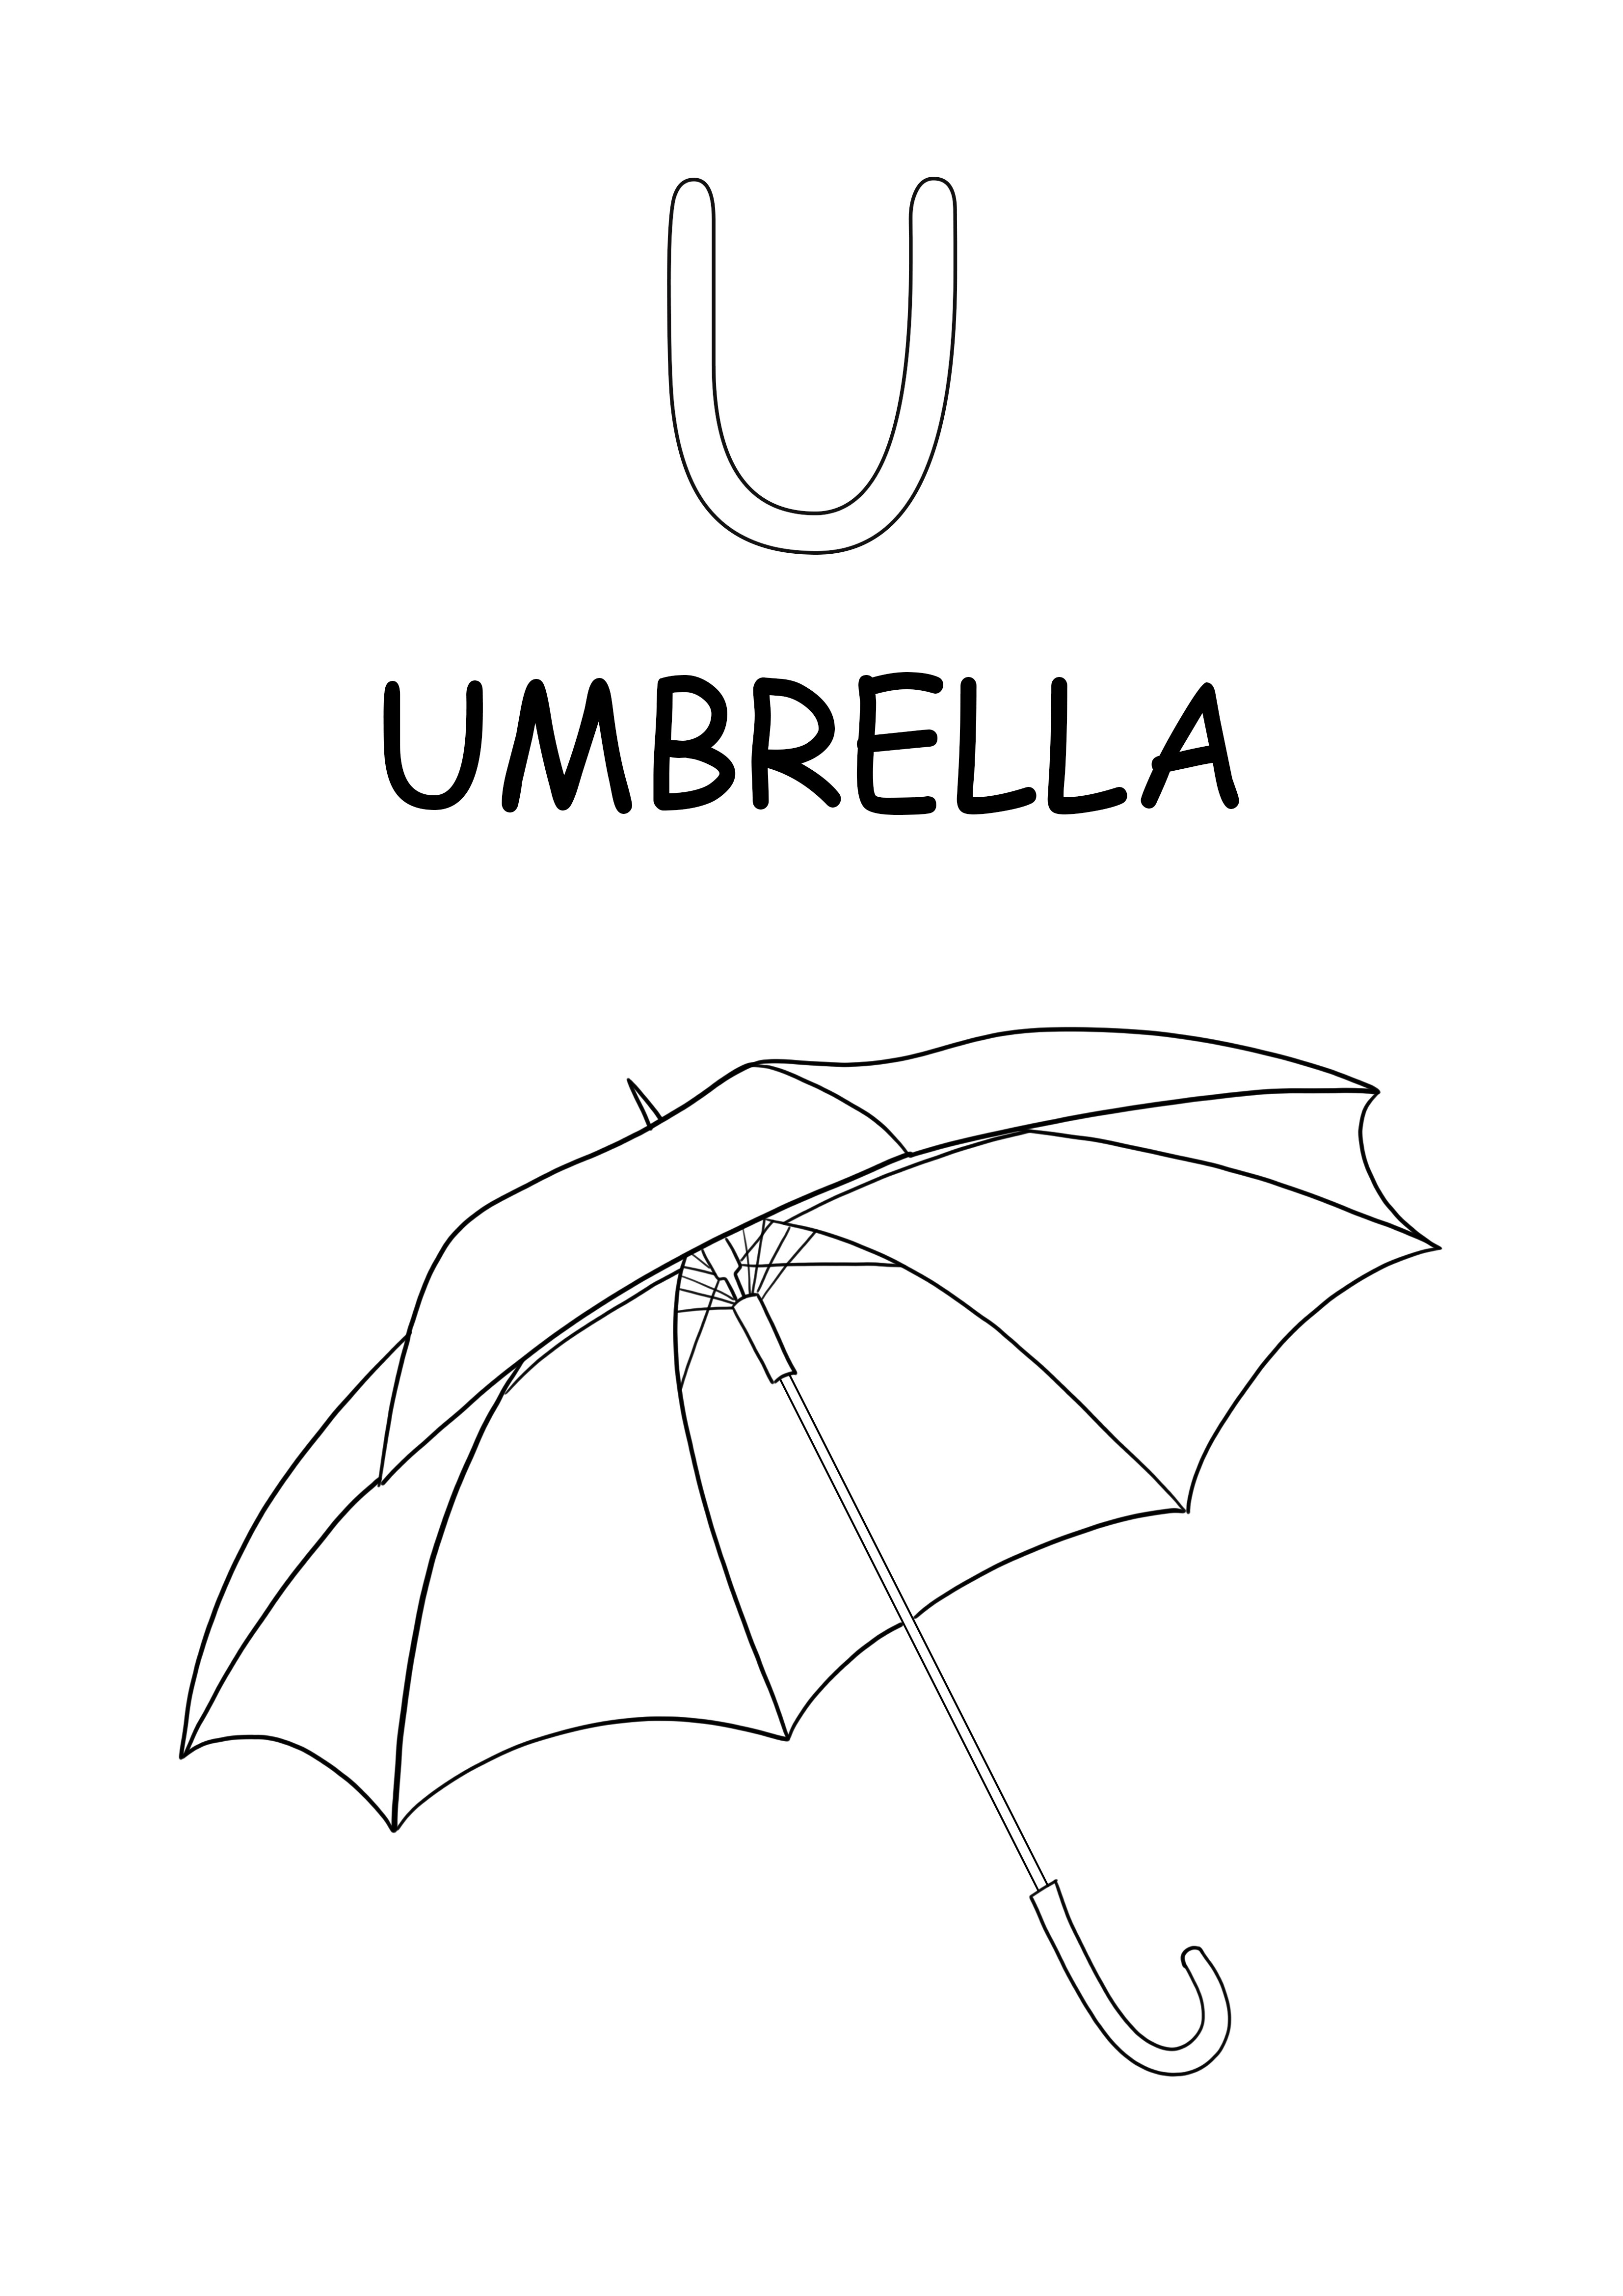 大文字の U 文字は、傘の単語の無料印刷およびダウンロード用です。